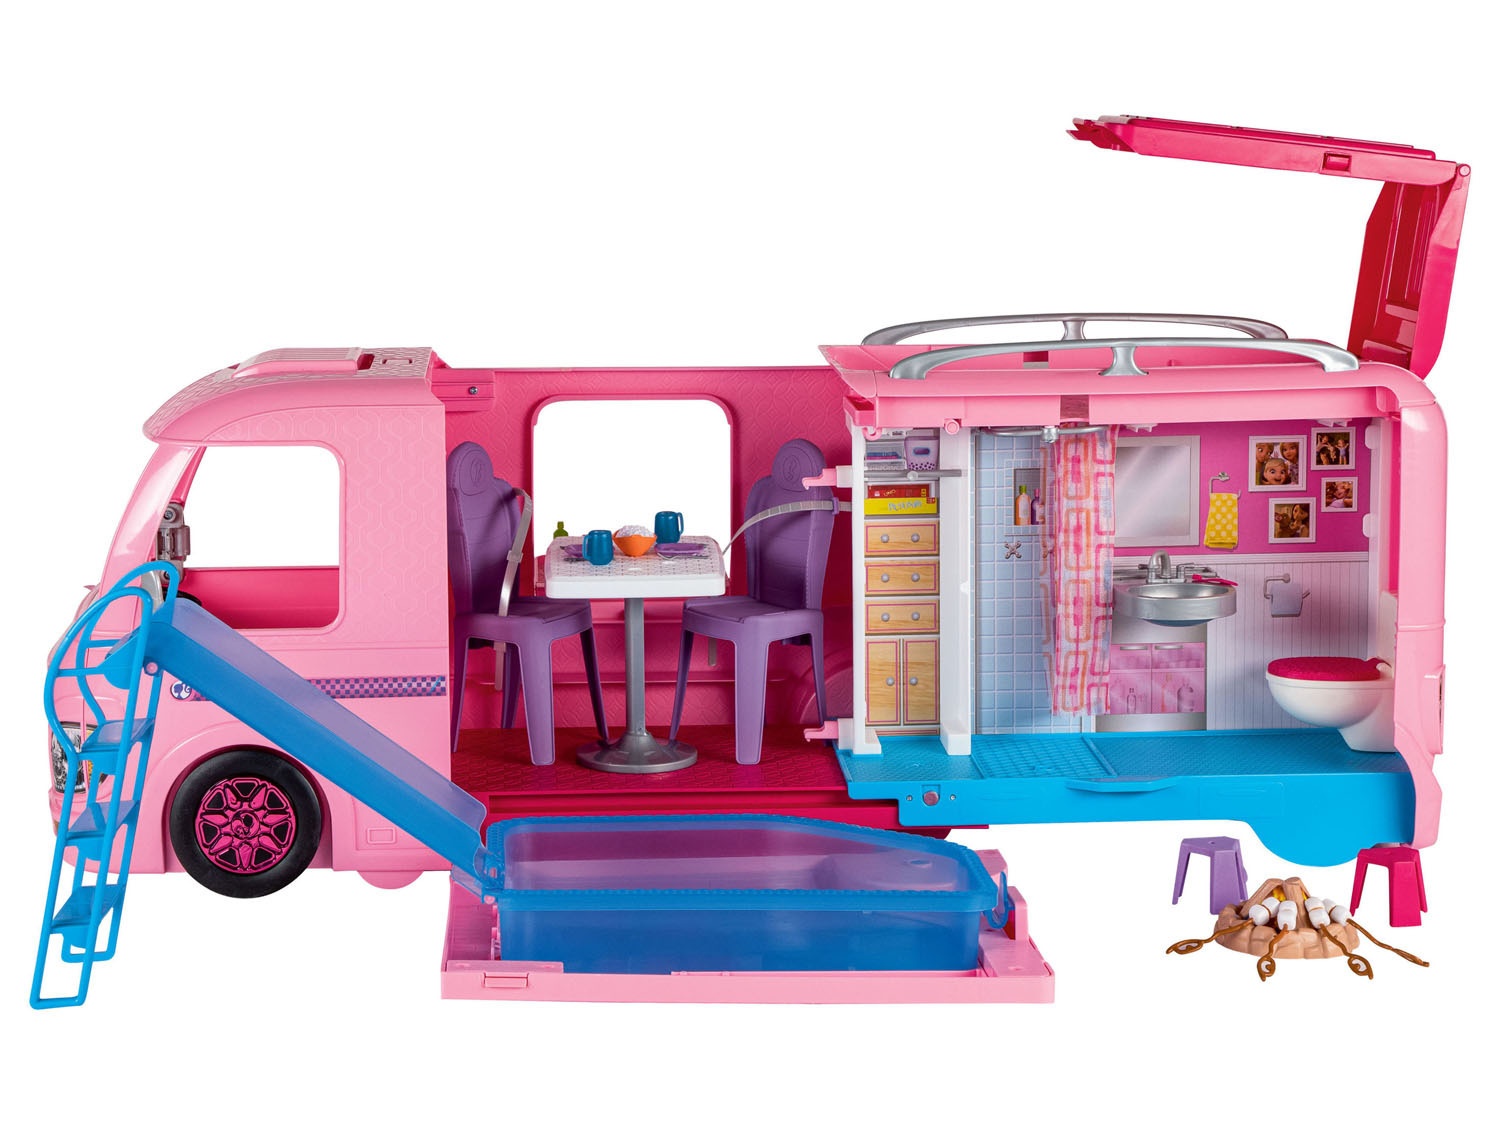 vlotter Stationair Kostbaar Barbie Super avonturen camper online kopen op Lidl.be